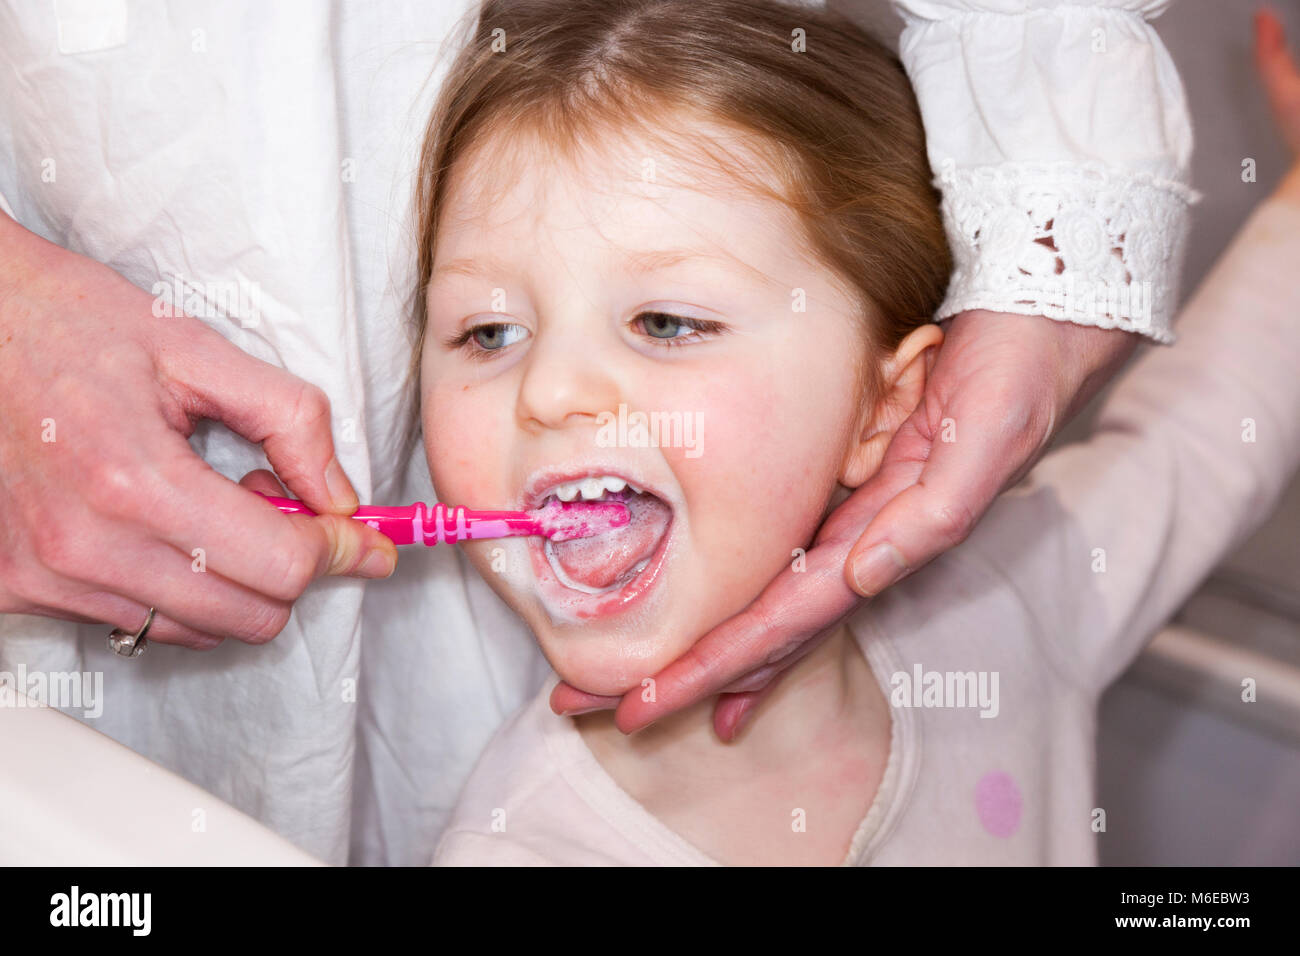 Drei Jahre alten Kind/Kind im Alter von 3 Jahren ihre Milch Zähne gebürstet mit einer Zahnbürste/Zahn Bürste mit - von ihrer Mutter/Mom/mom. Stockfoto